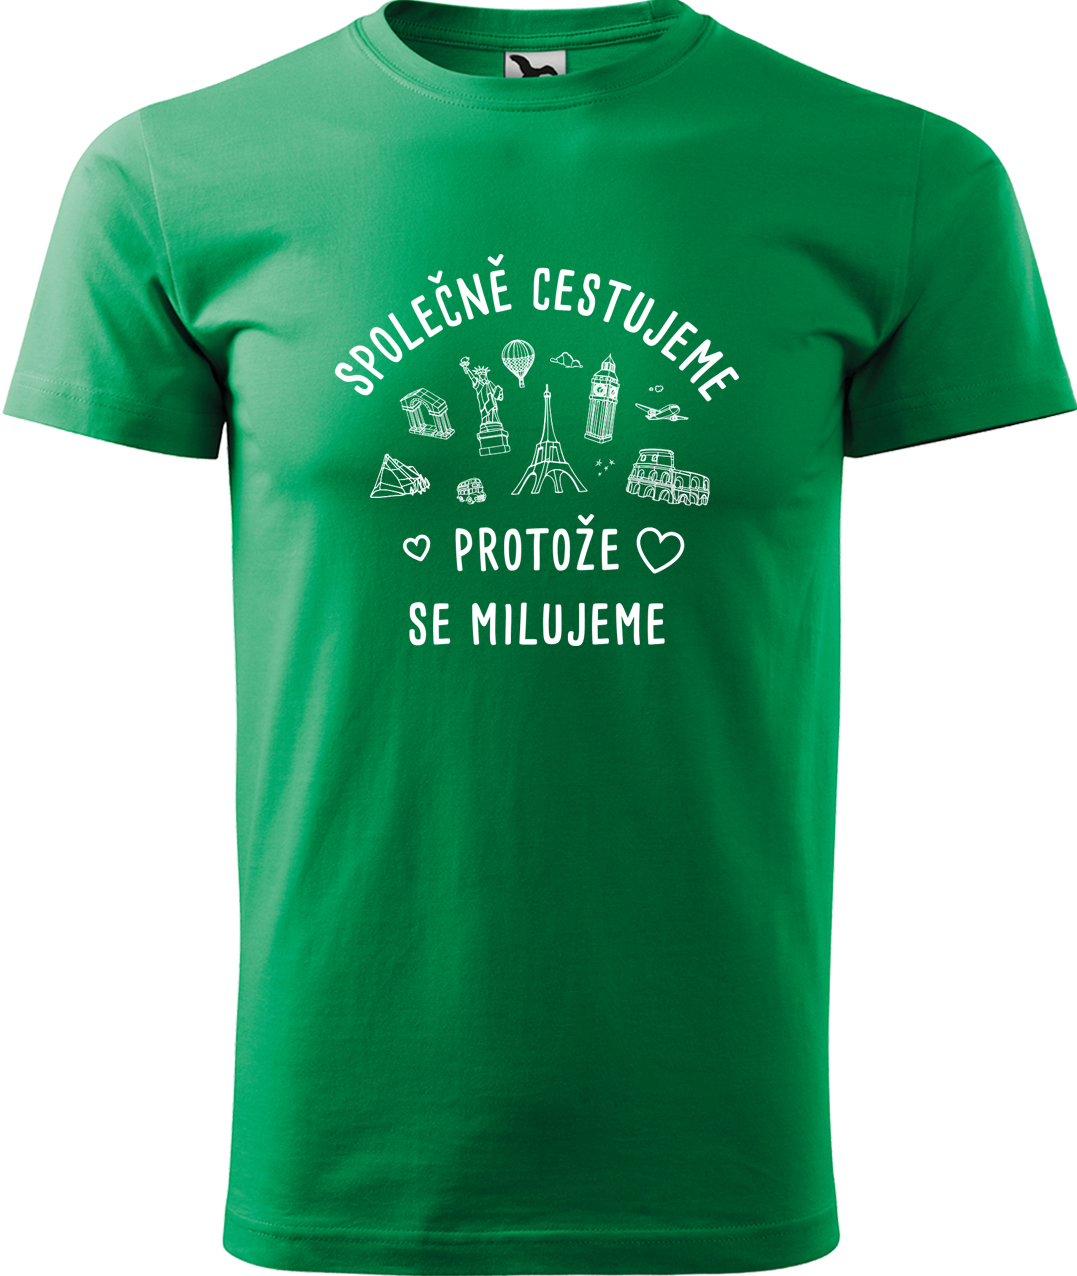 Pánské cestovatelské tričko - Společně cestujeme protože se milujeme Velikost: S, Barva: Středně zelená (16), Střih: pánský